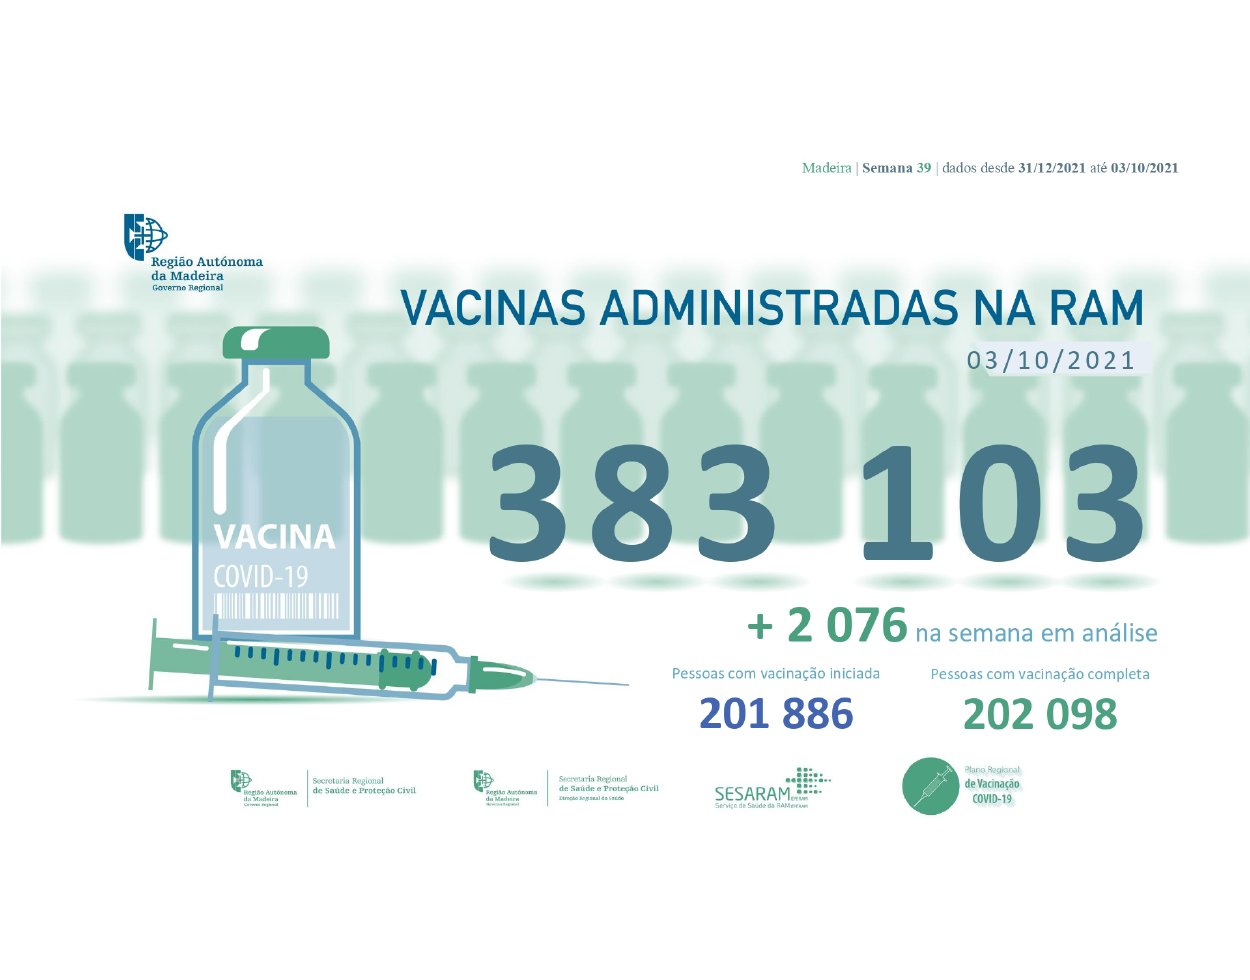 Administradas mais de 383 mil vacinas contra a COVID-19 na RAM